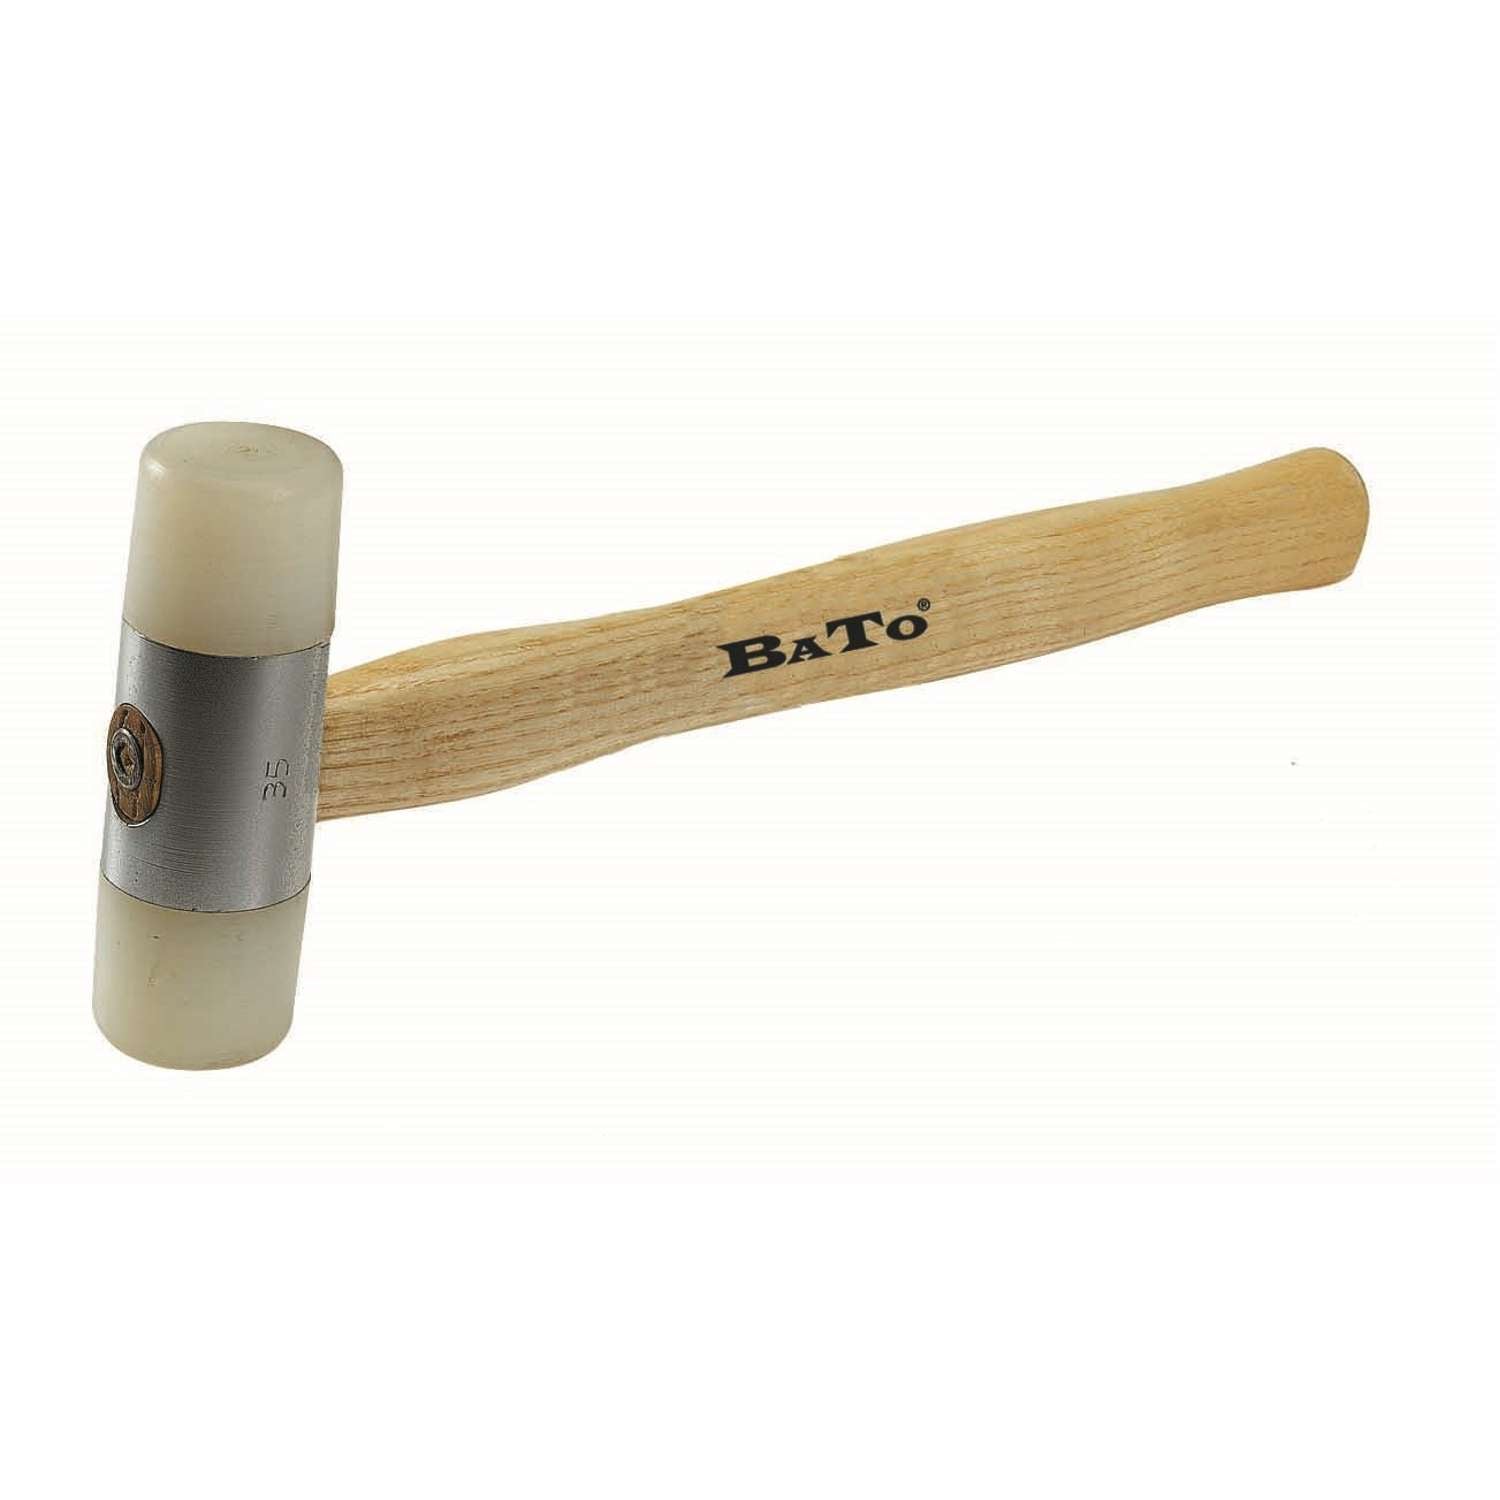 16: BATO Nylonhammer 35 mm. Træskaft